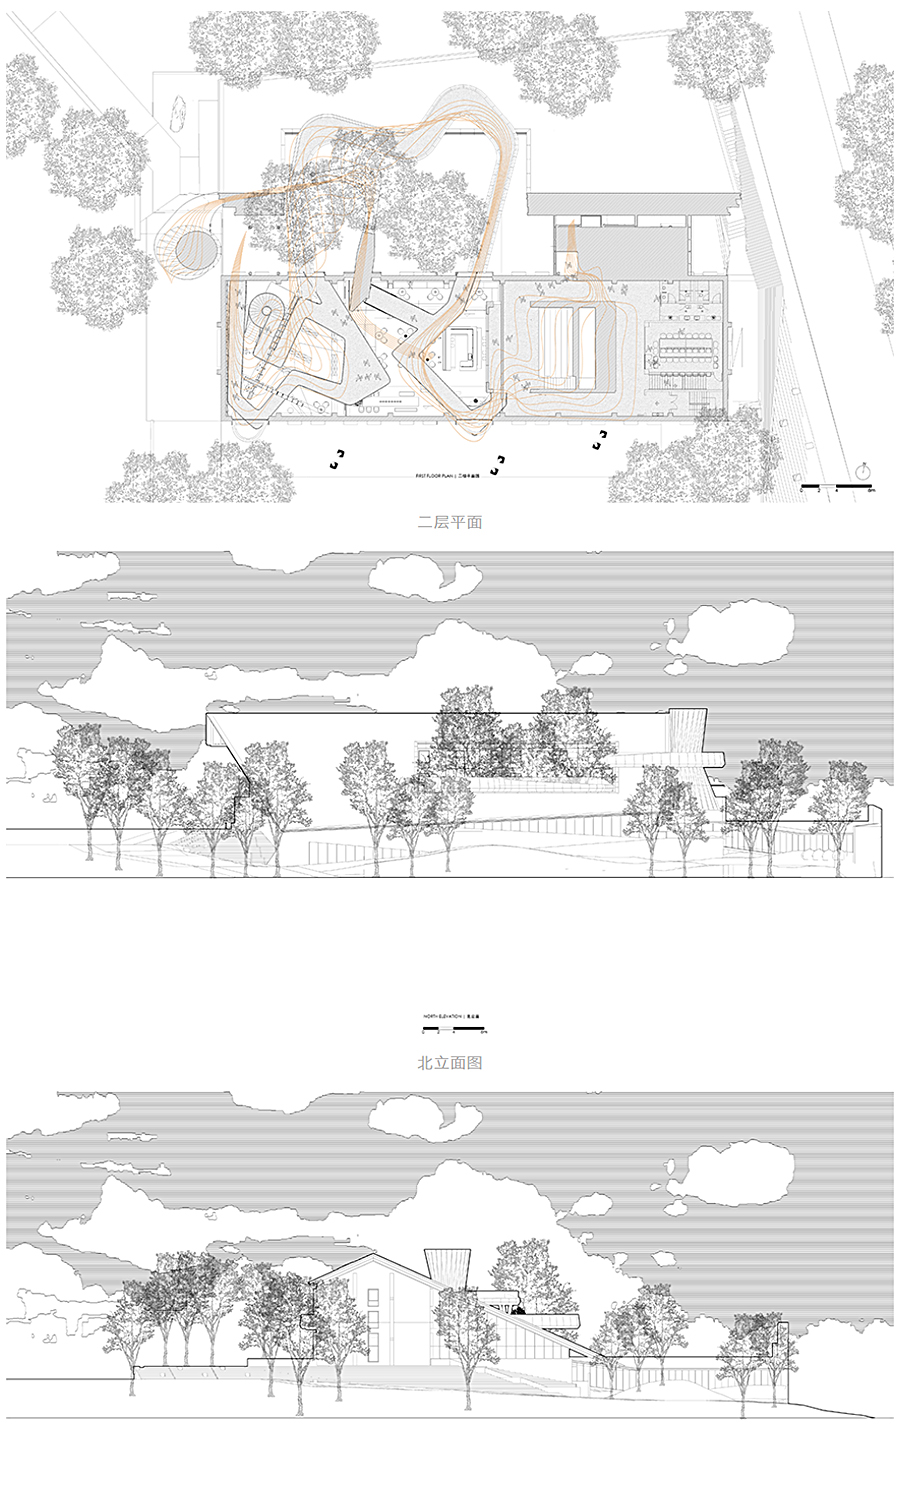 一座建筑投影一方山水-_-金华山嘴头未来社区中心_0025_图层-26.jpg